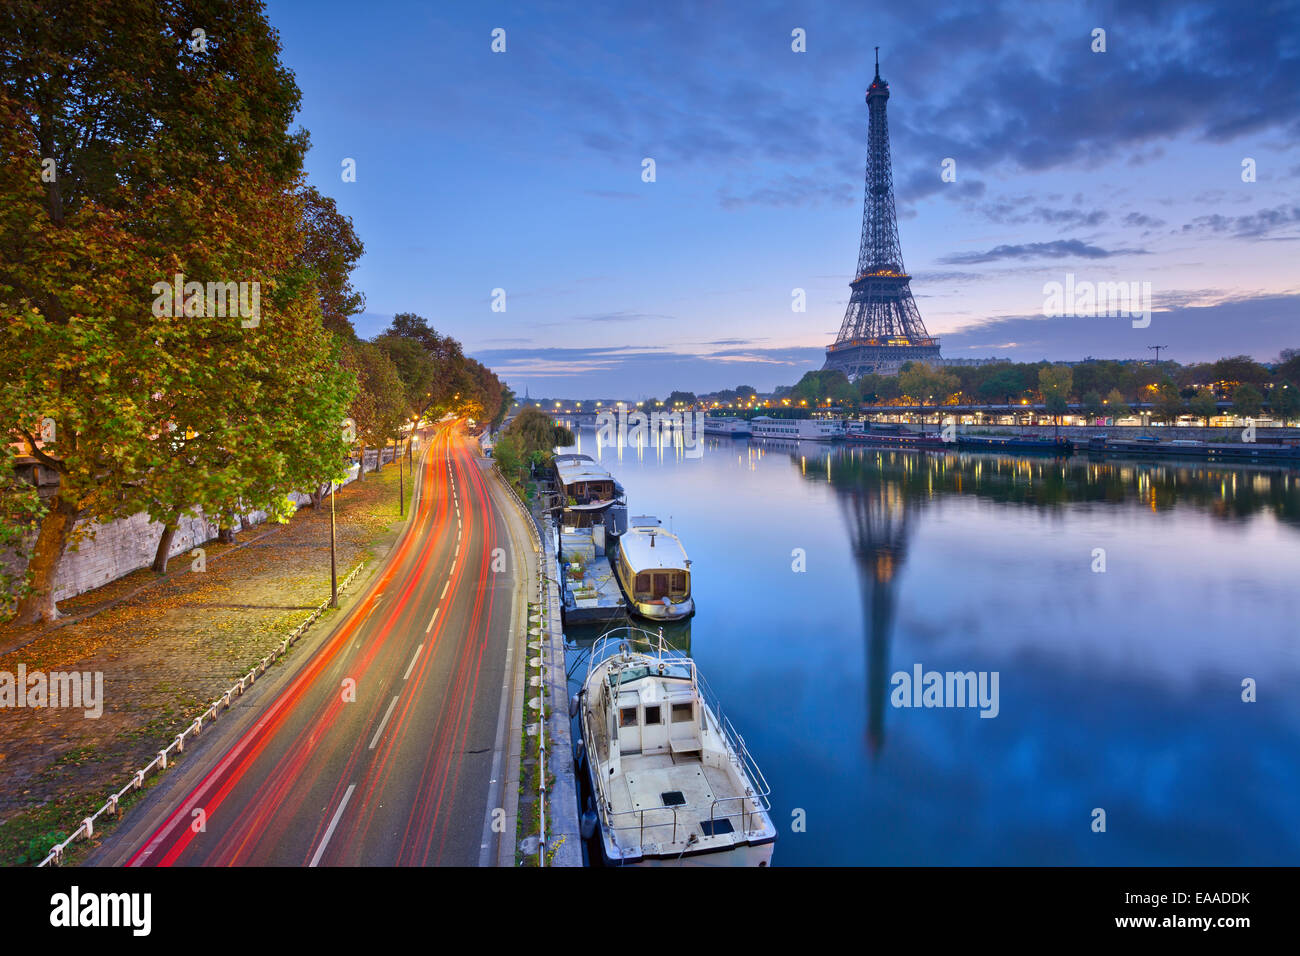 Image de la Tour Eiffel avec le reflet dans la Seine. Banque D'Images